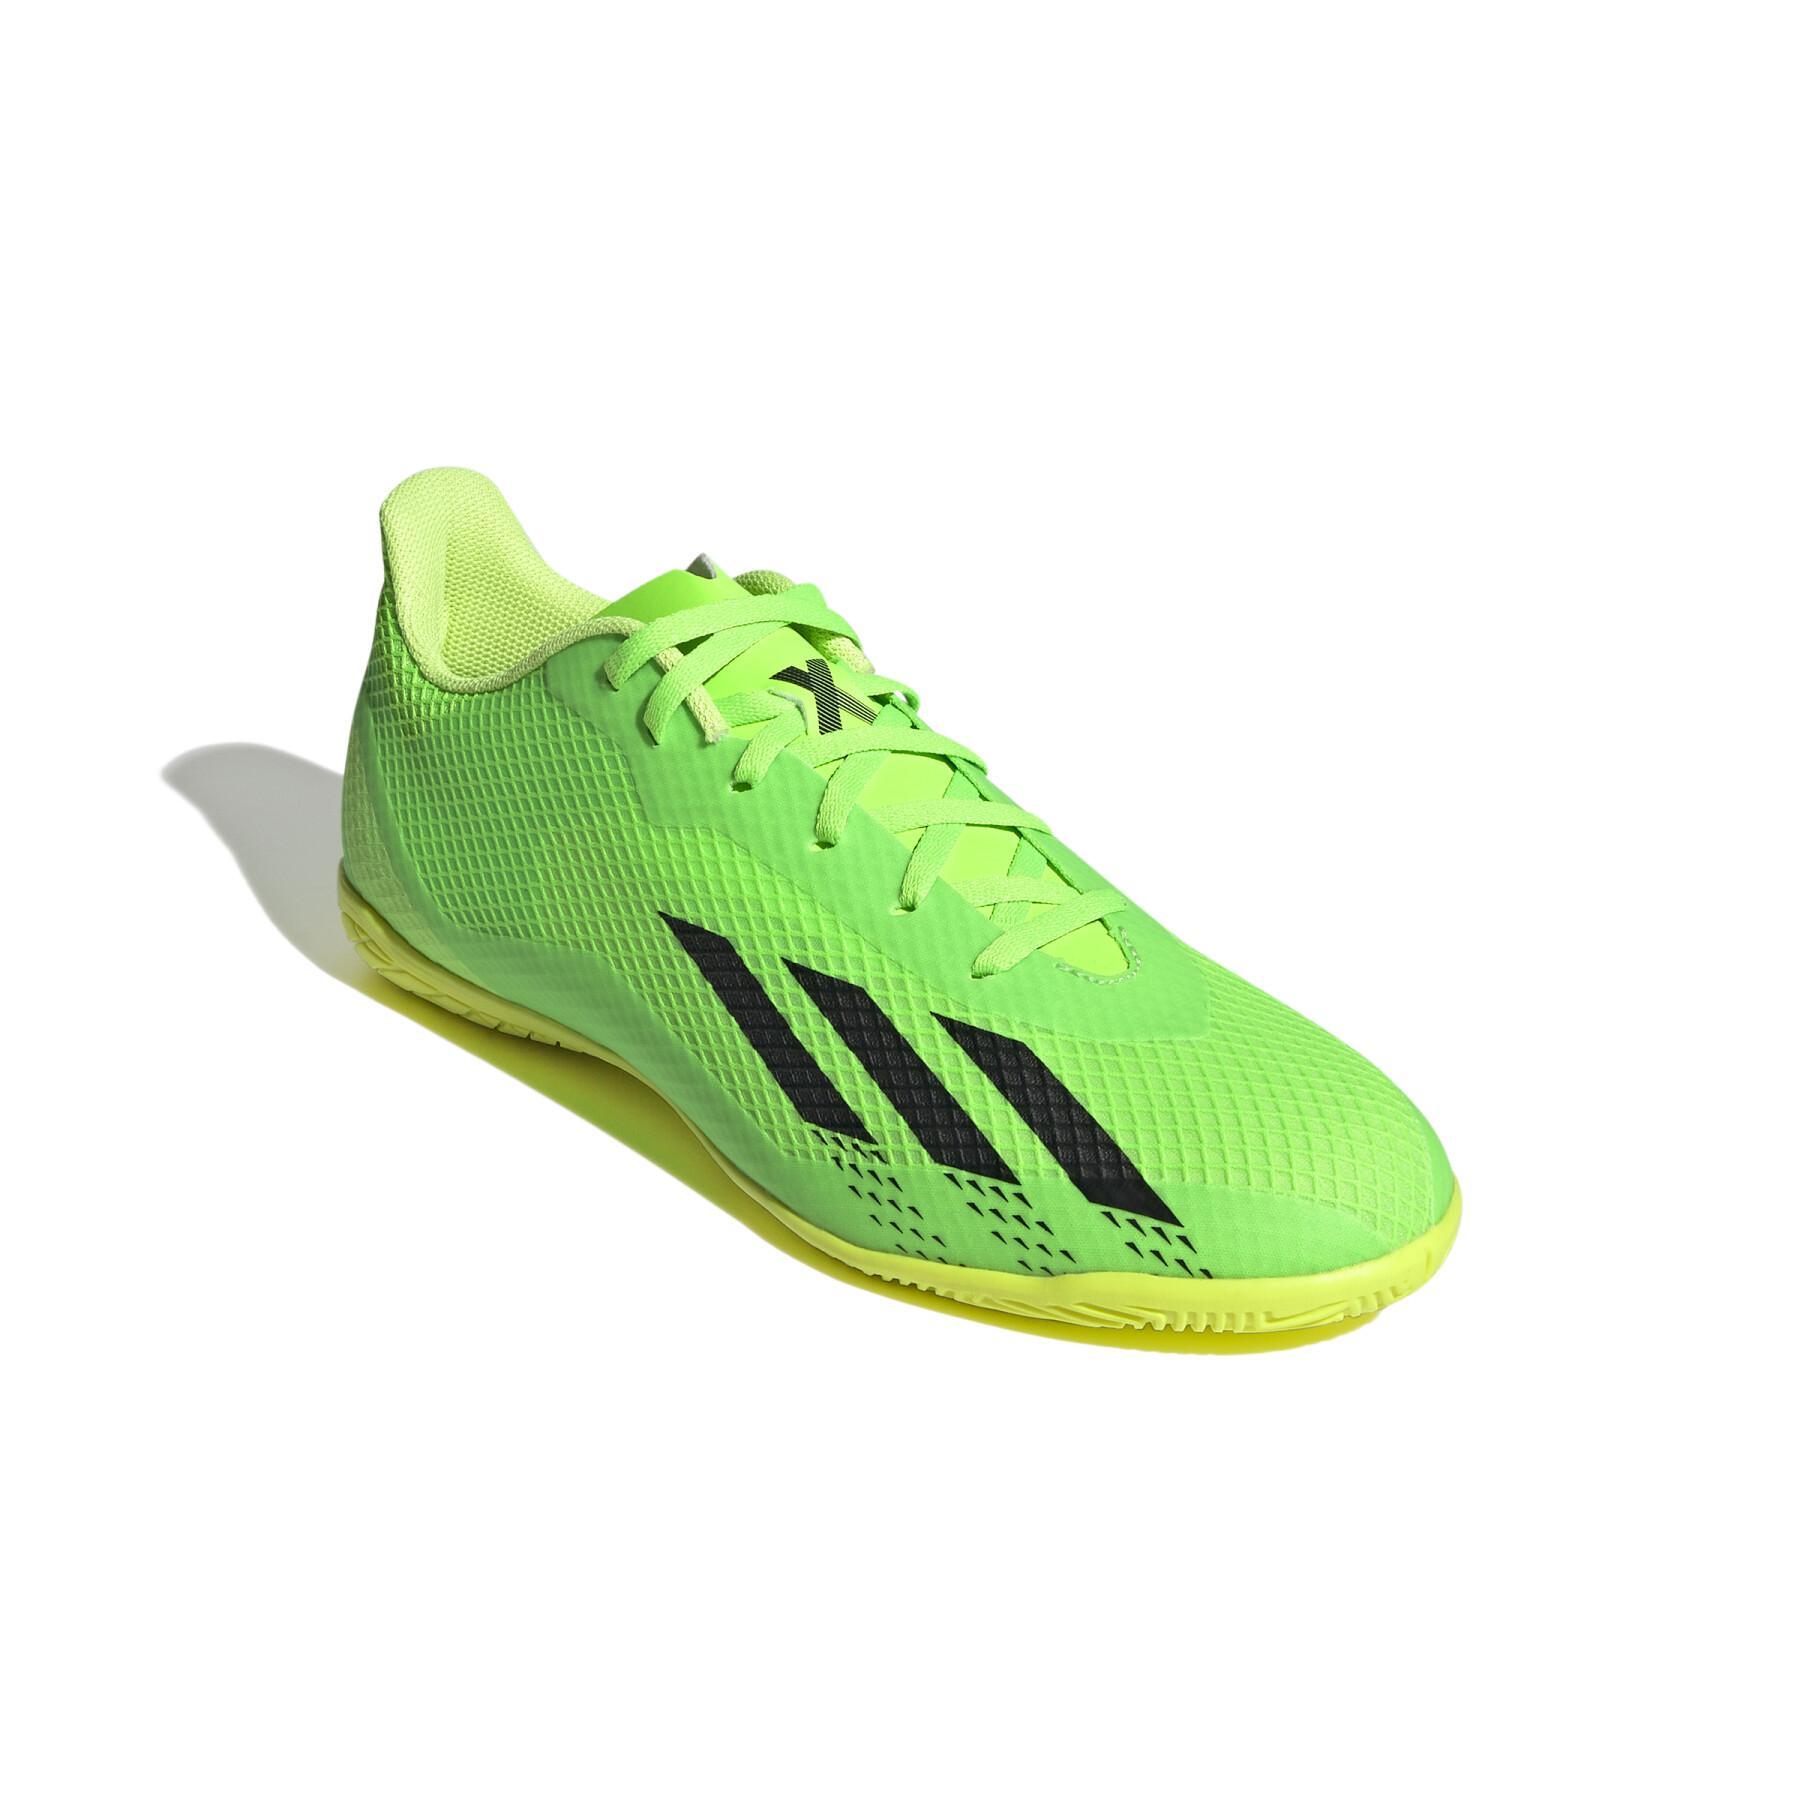 Chaussures de football adidas X Speedportal.4 IN